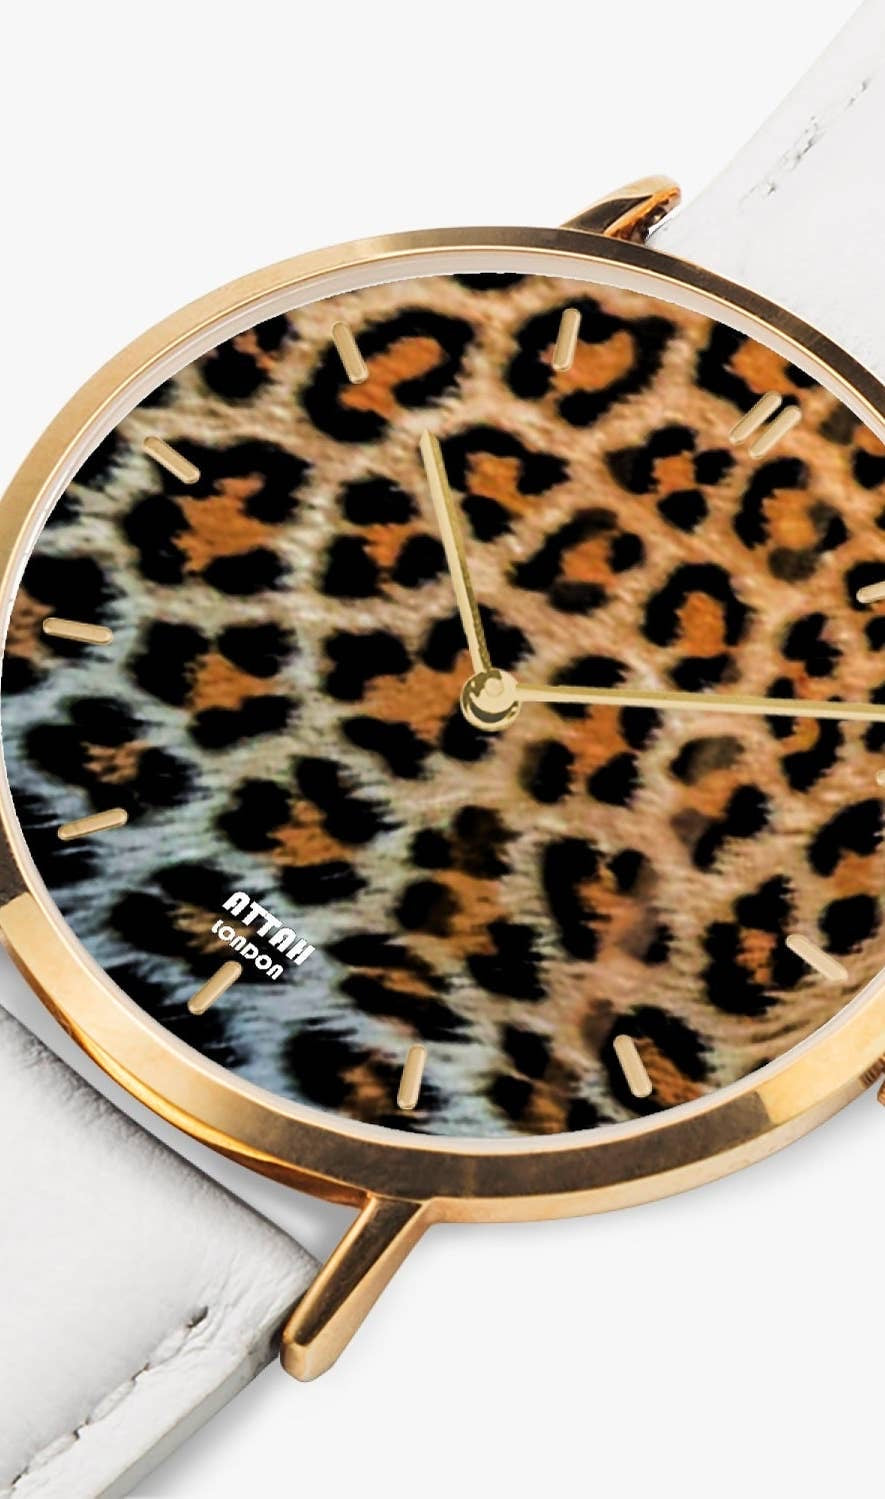 Reloj de cuarzo étnico de leopardo resistente al agua para mujer